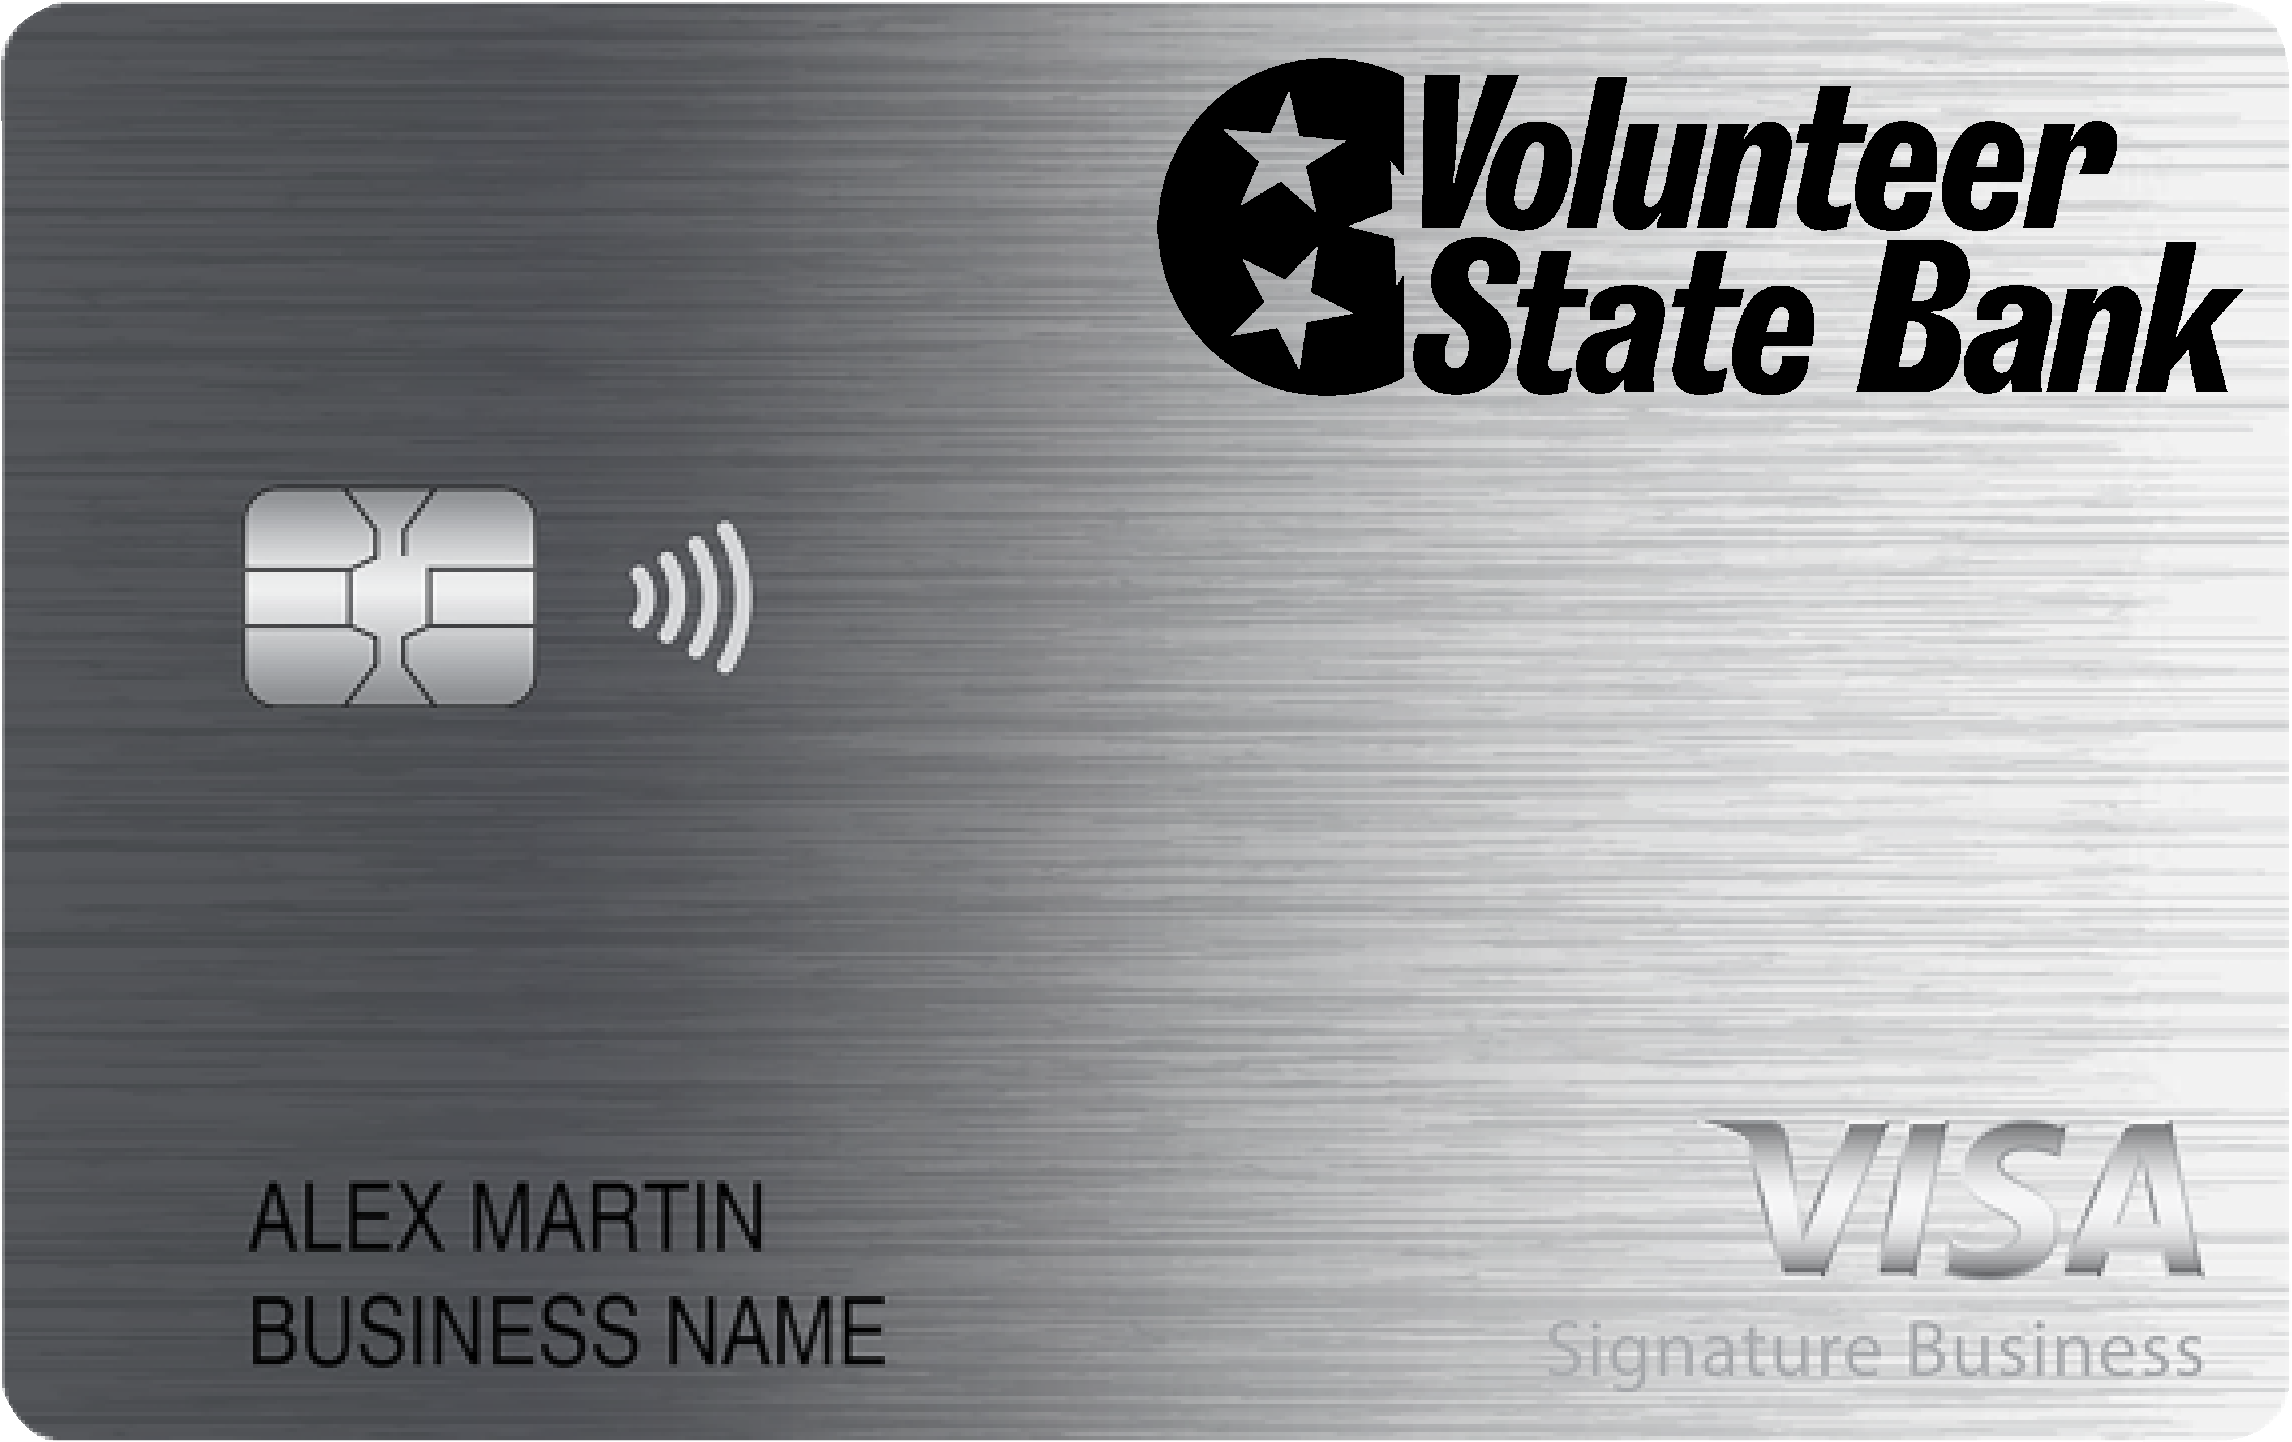 Volunteer State Bank Smart Business Rewards Card